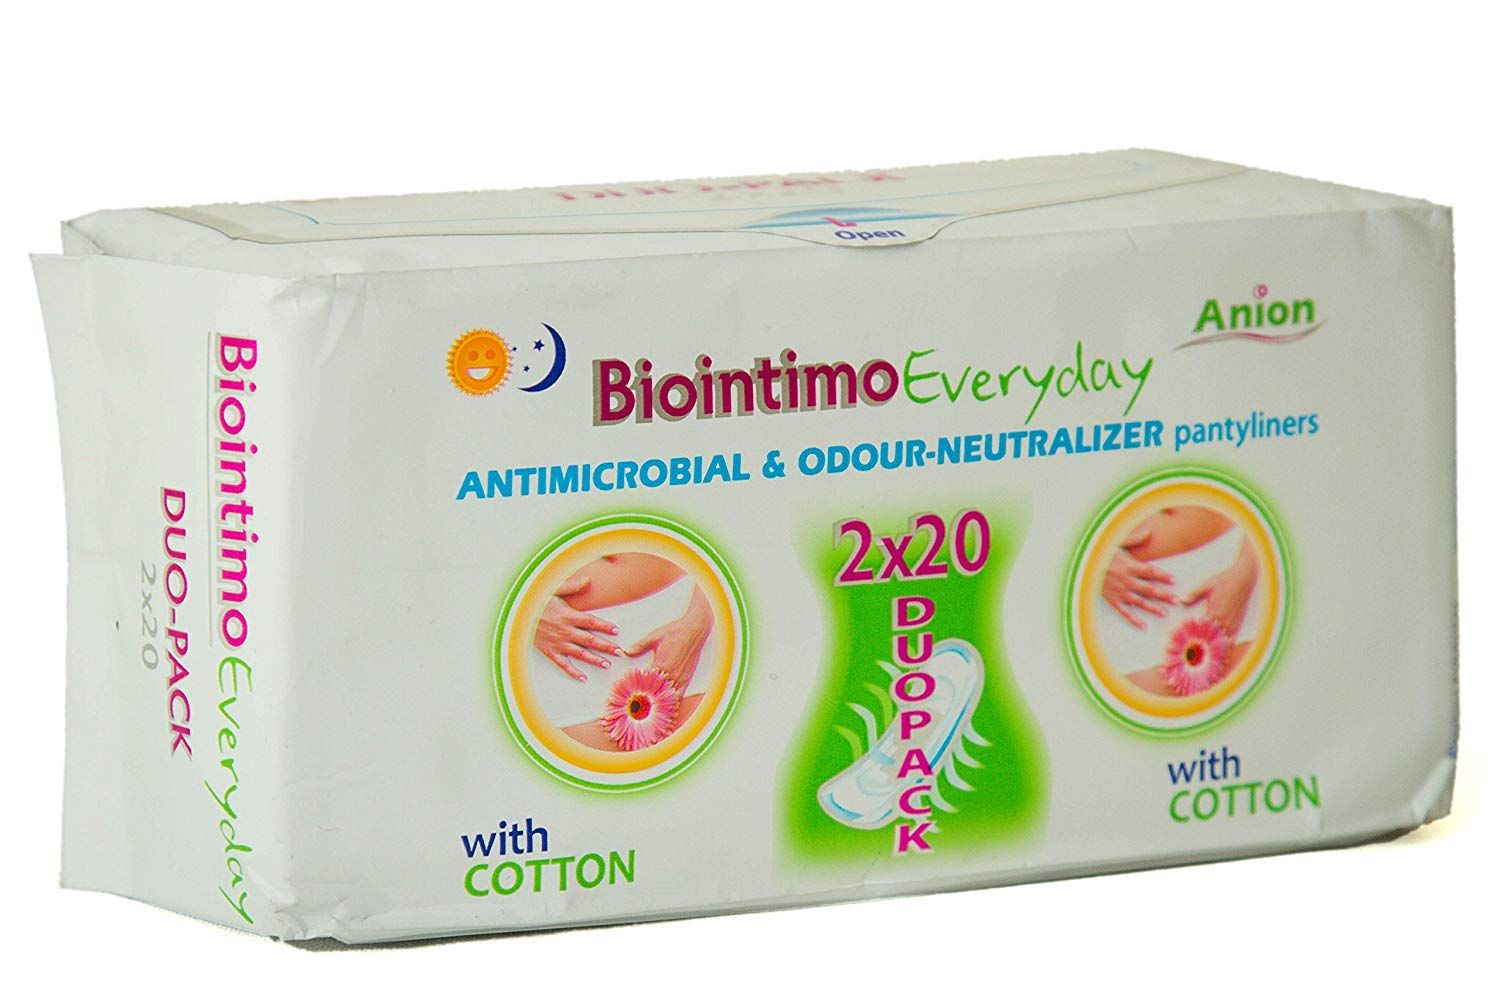 Podpaski hygieniczne - wkladki DUO pack 2x20szt Damskie podpaski hygieniczne - wkladki z paskiem anionowym BioIntimo Corporation